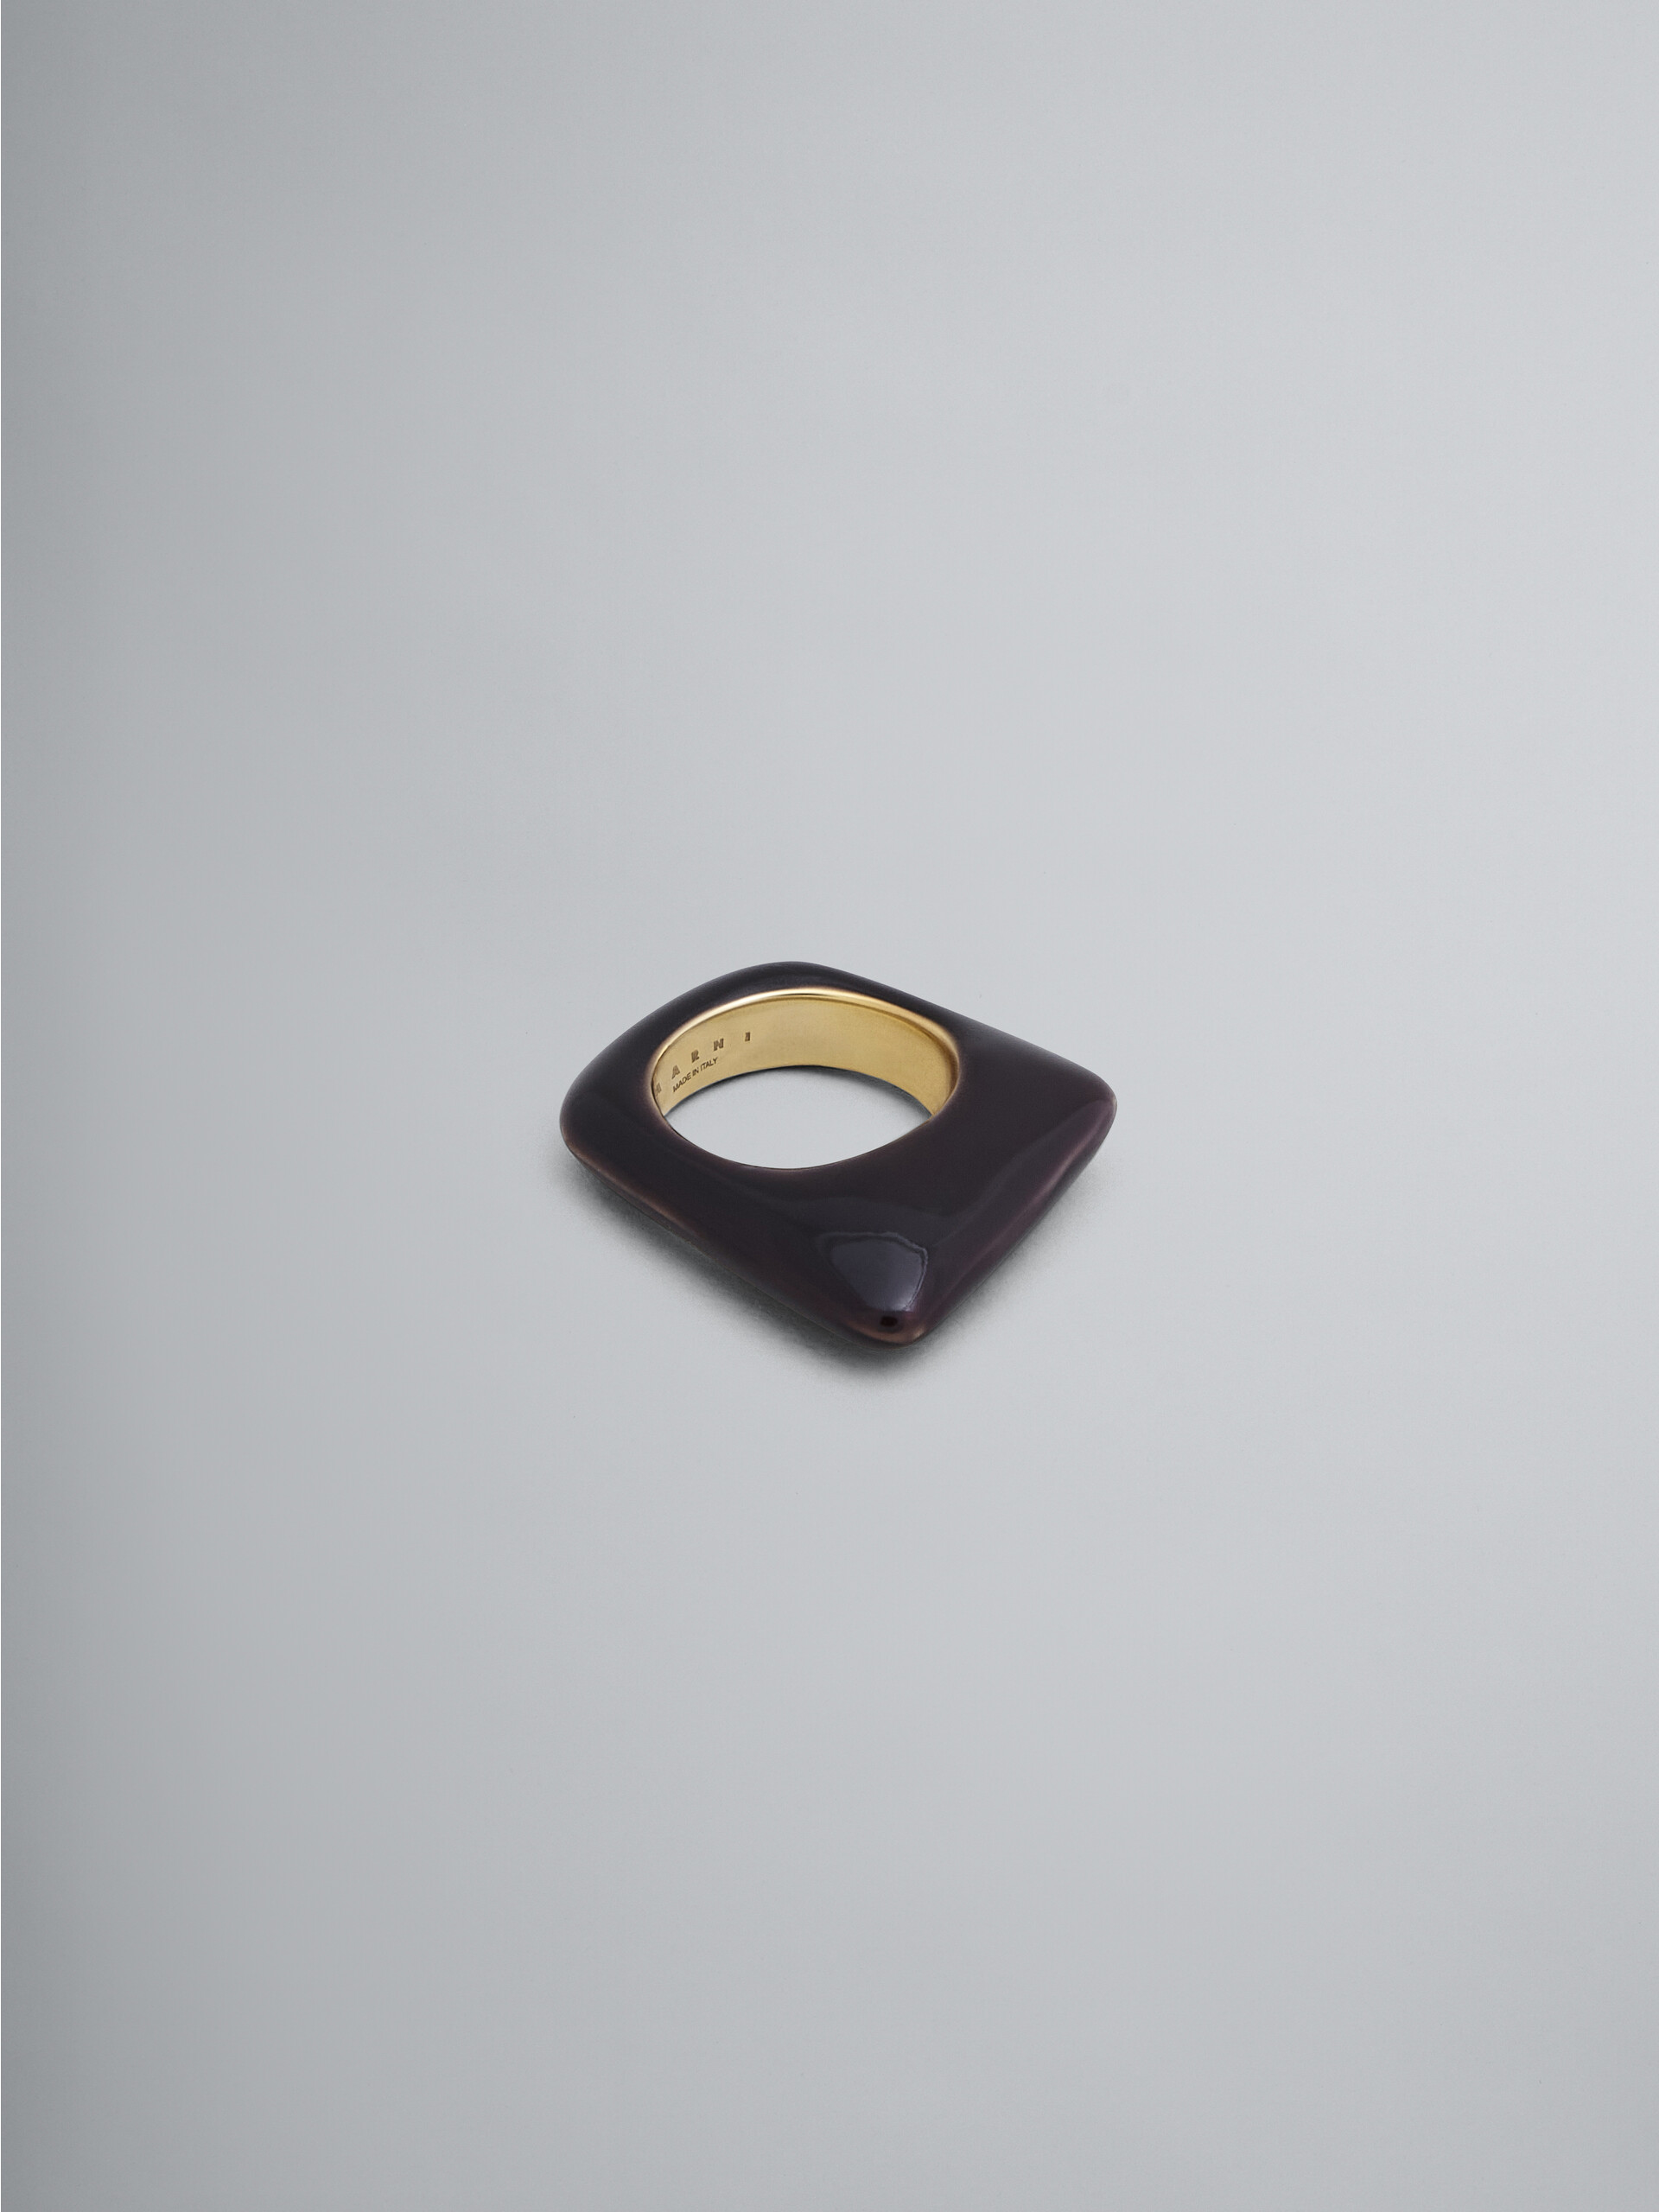 Anello TRAPEZE in metallo ricoperto di smalto trasparente nero - Anelli - Image 1